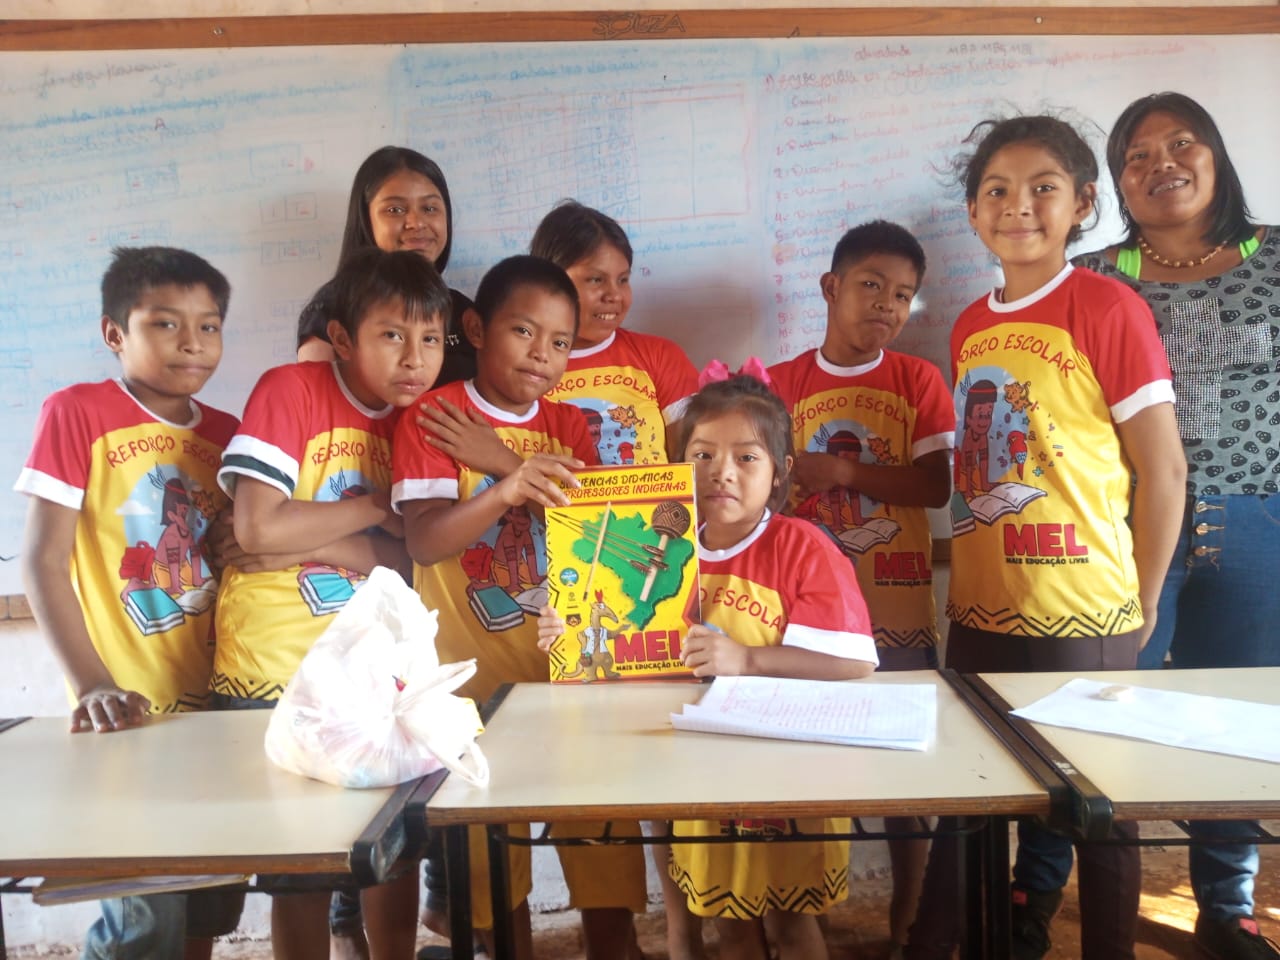 MAIS EDUCAÇÃO LIVRE: material didático de professores indígenas fortalece a educação nas aldeias